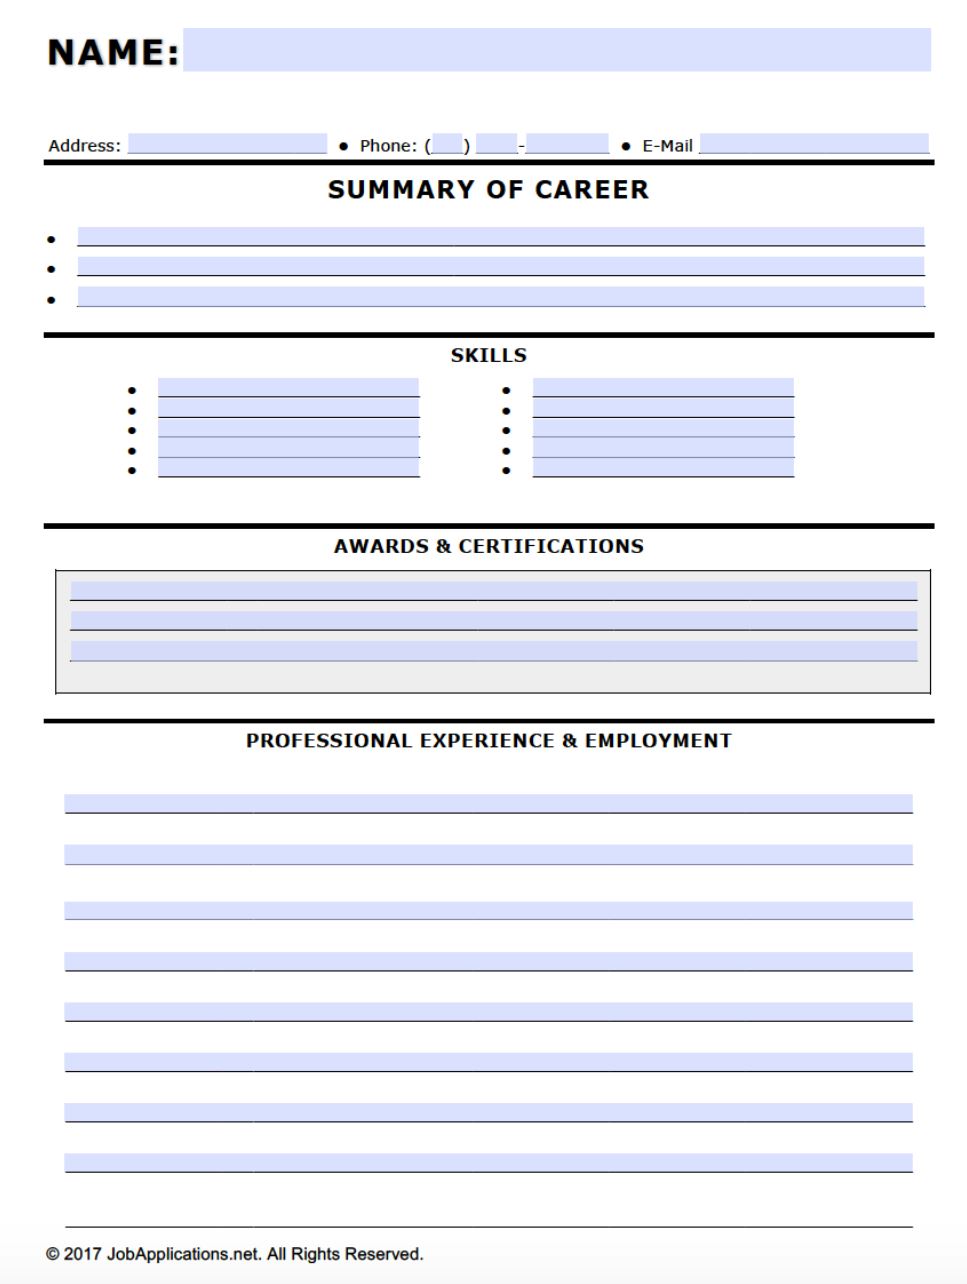 resume-blank